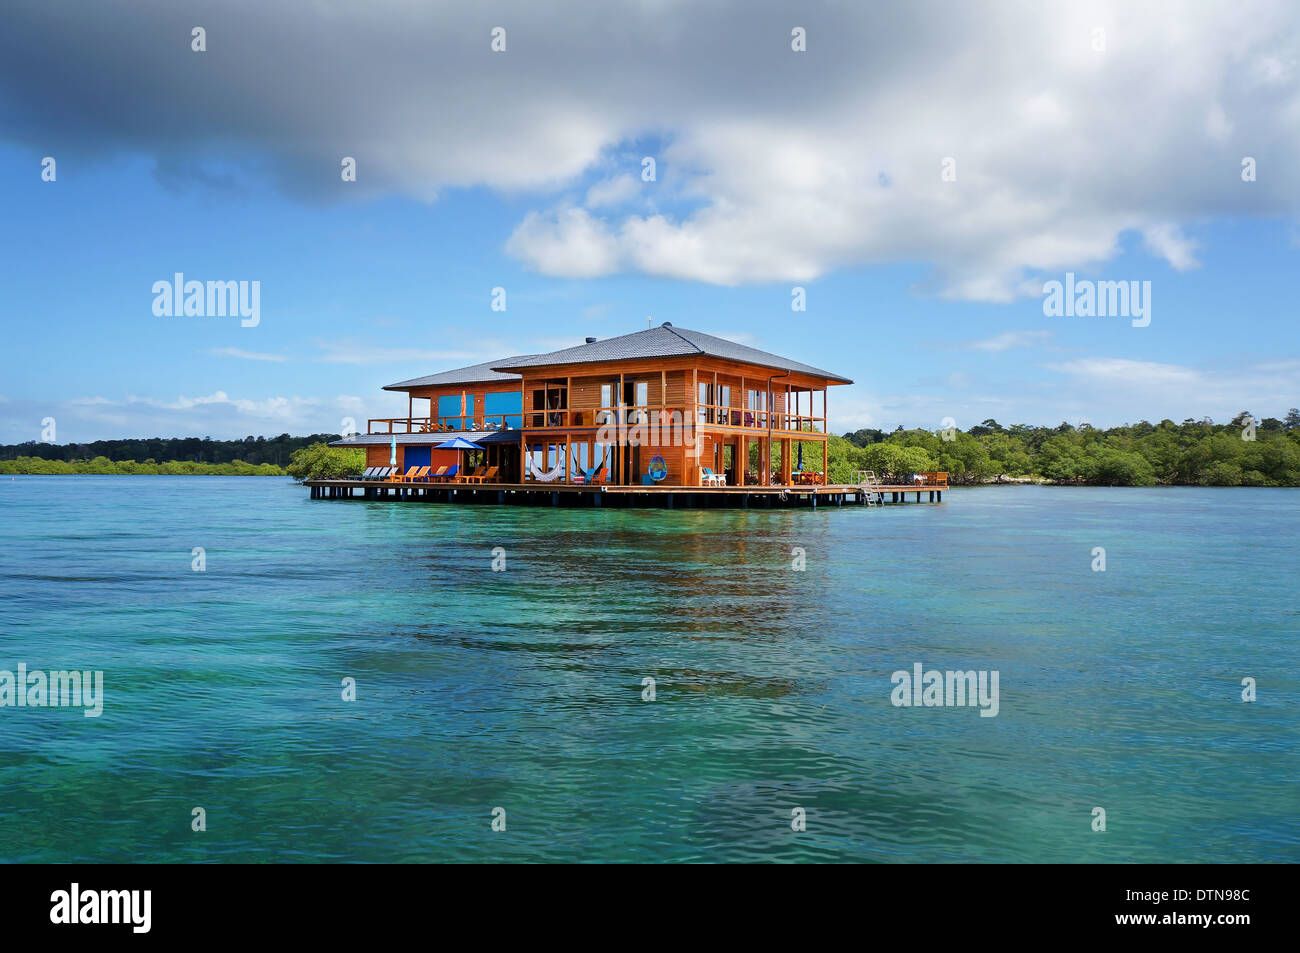 Belle maison sur pilotis au-dessus de l'eau de la mer des Caraïbes avec ciel nuageux ciel bleu, Bocas del Toro, PANAMA Banque D'Images